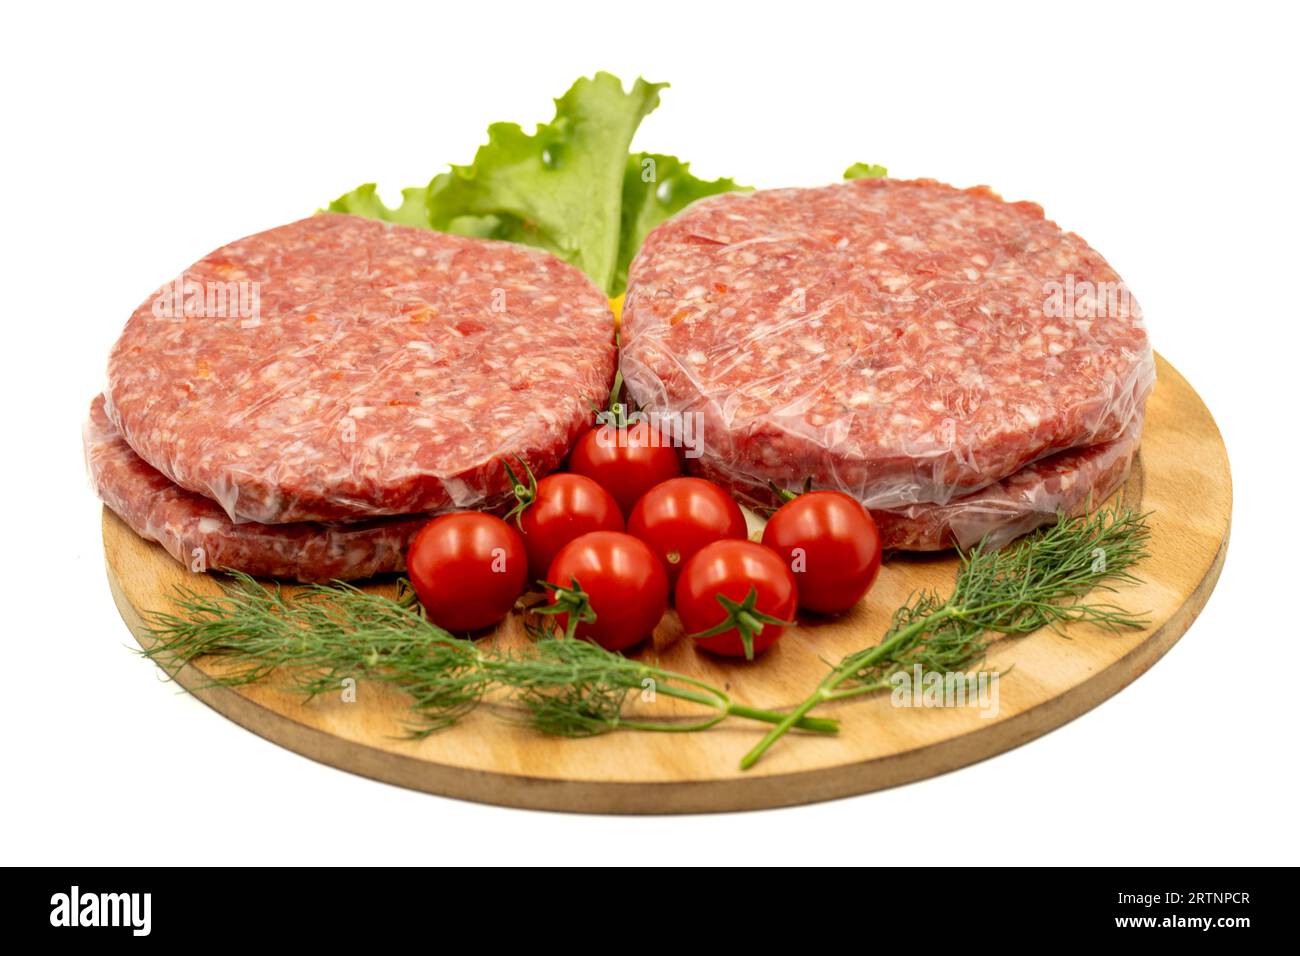 Polpetty di hamburger crudo isolato su sfondo bianco. Hamburger crudo di vitello con erbe e spezie Foto Stock